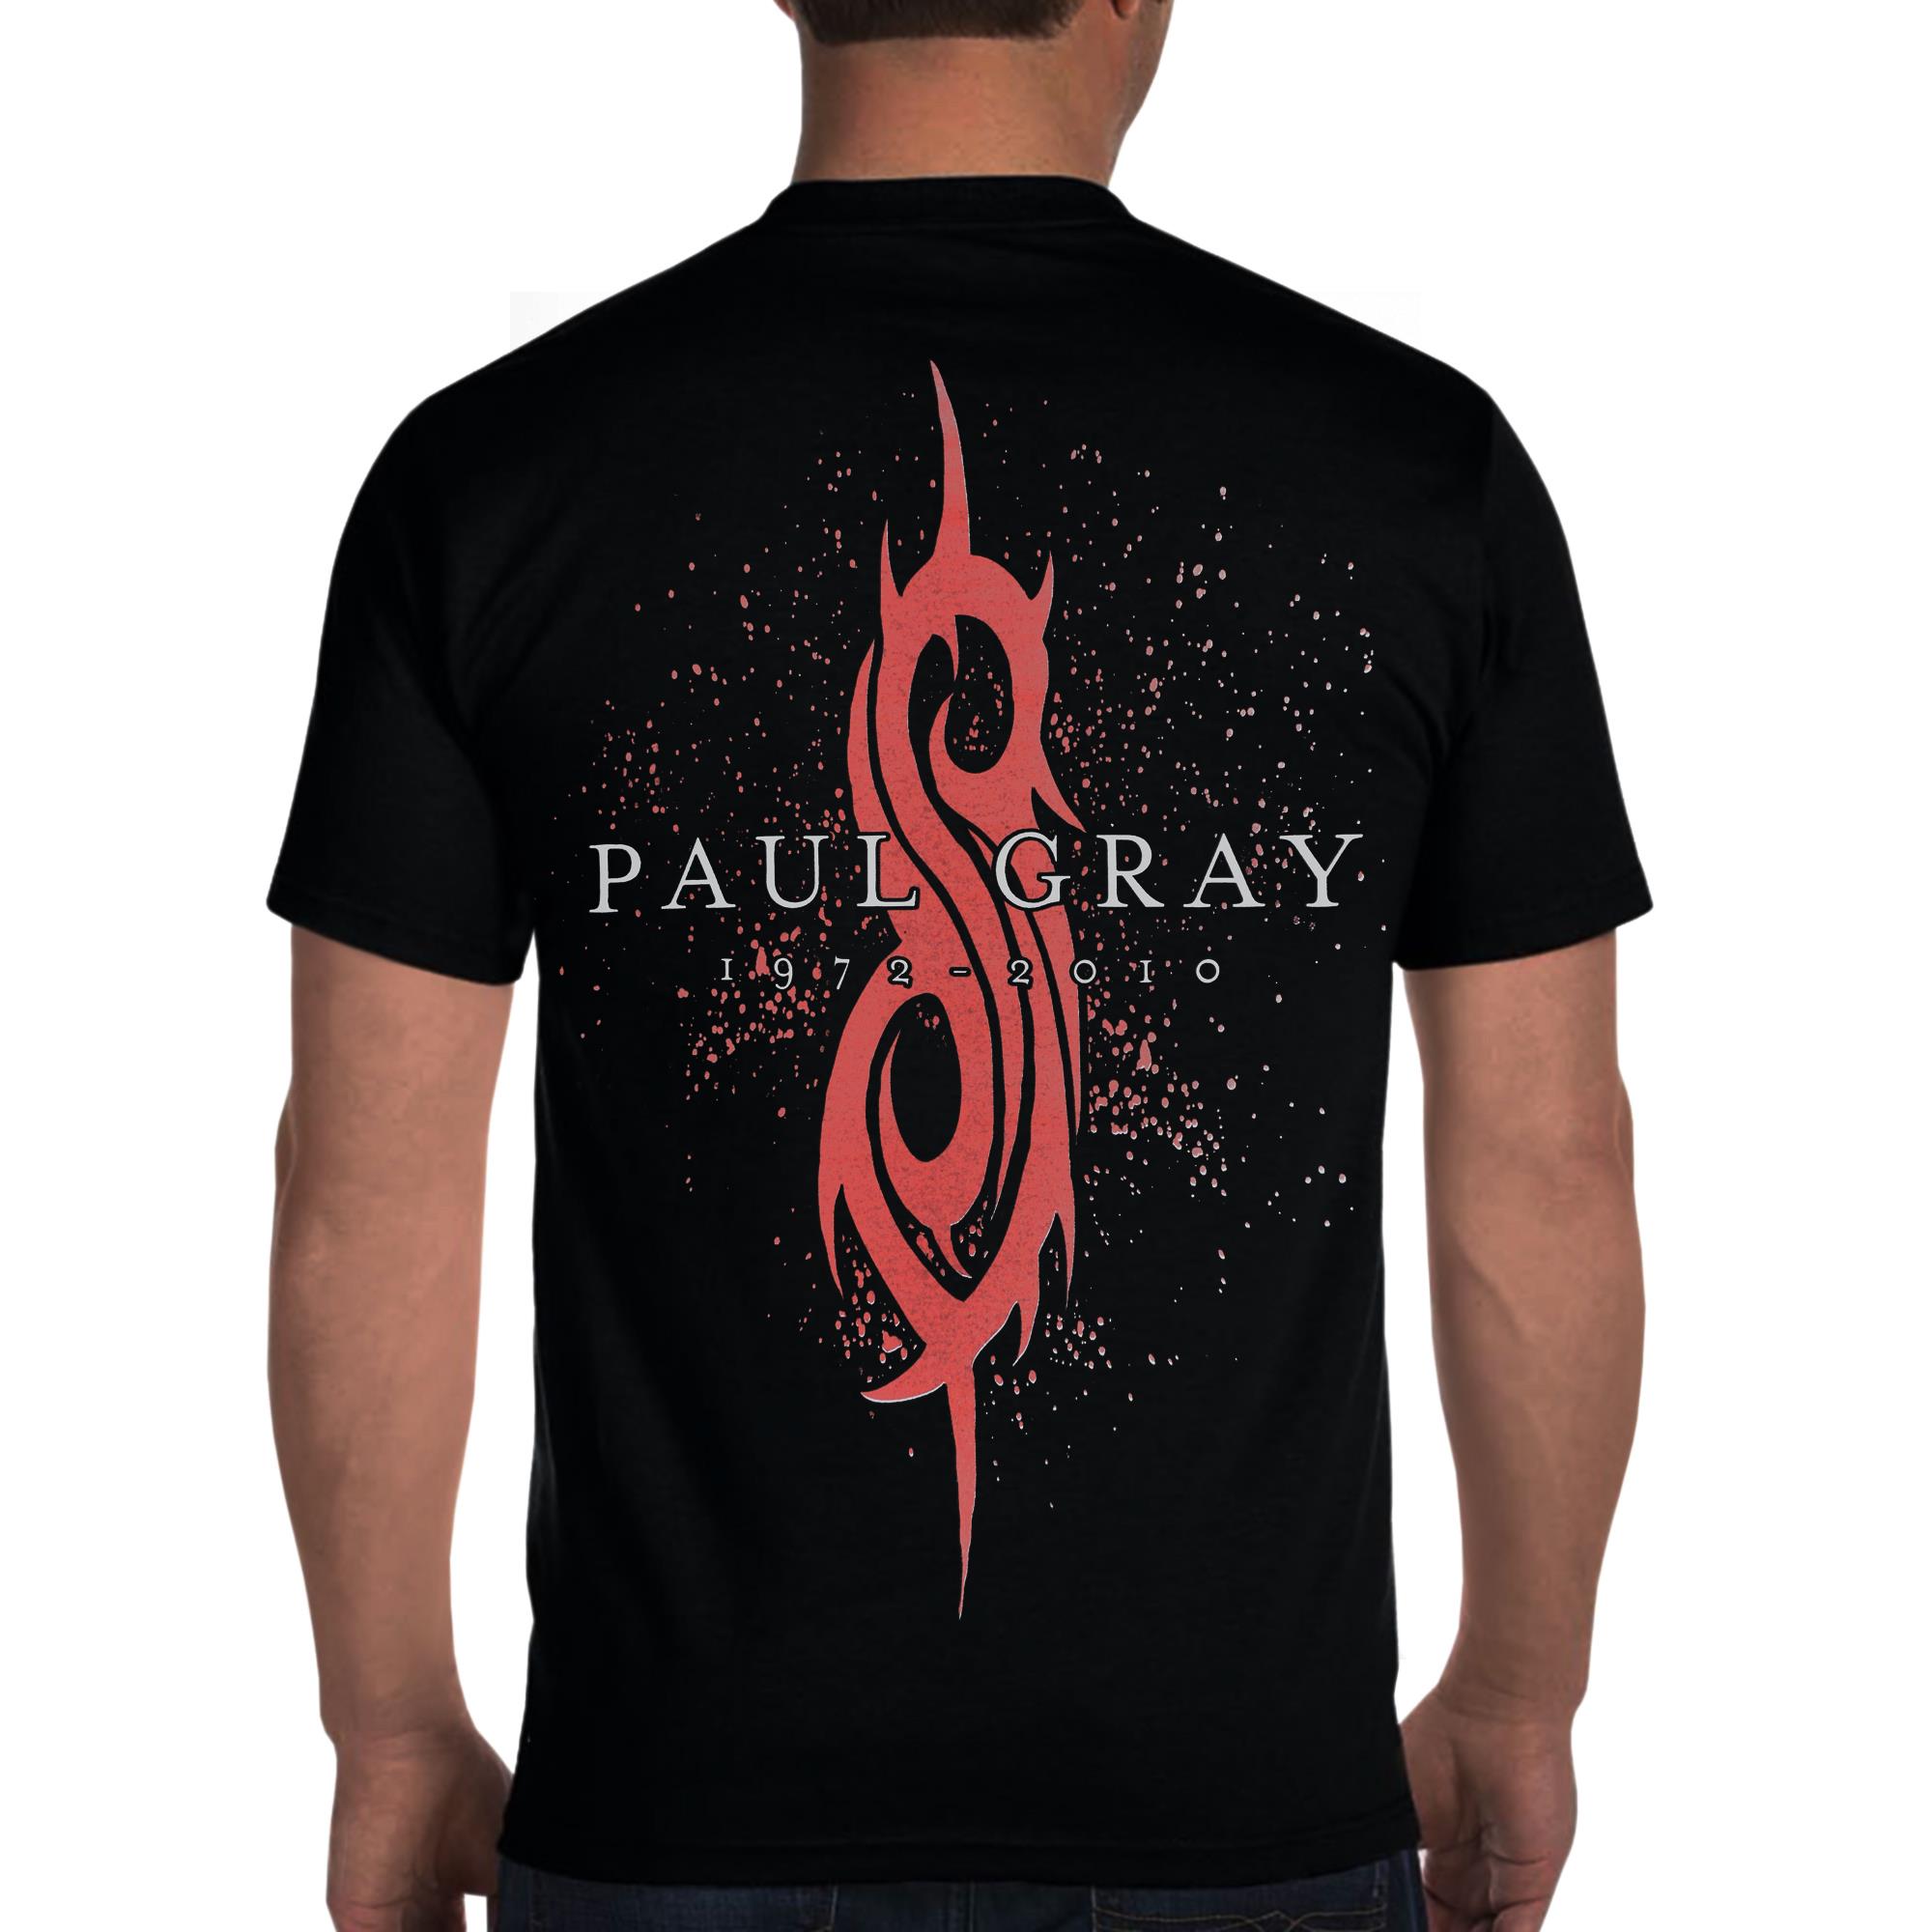 Paul Gray 1972-2010 T-Shirt